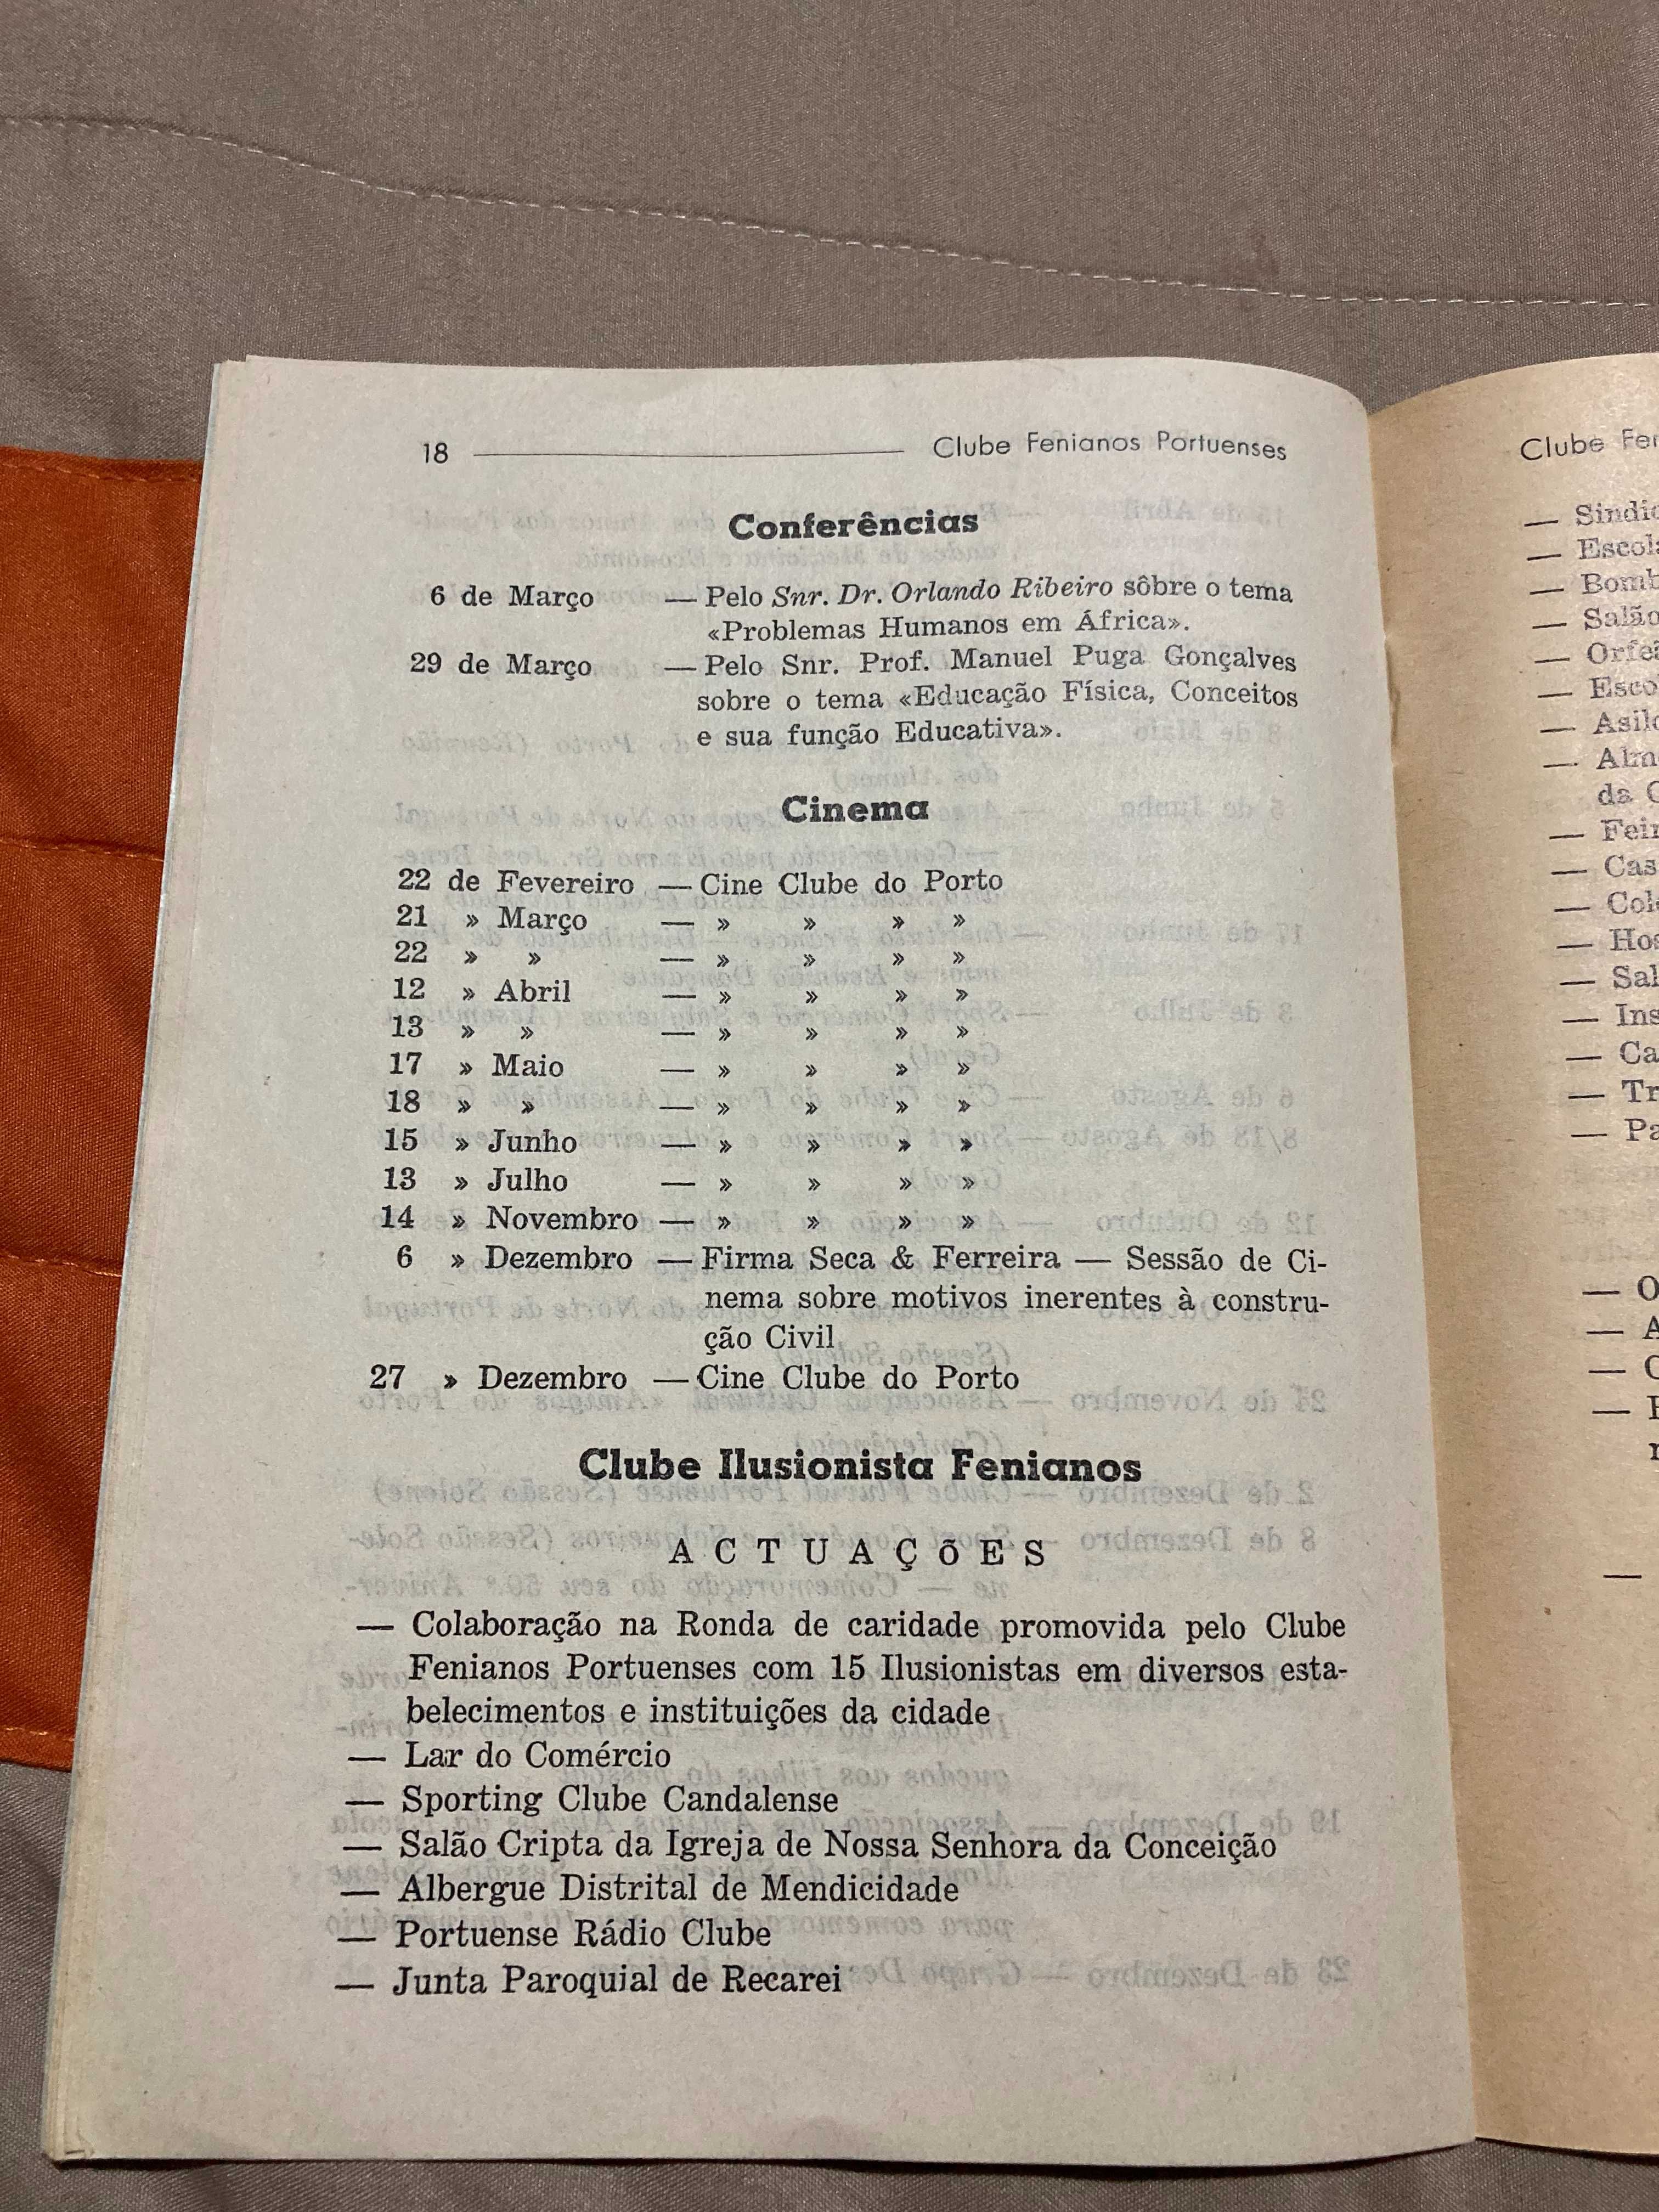 Clube Fenianos Portuenses 1961 Relatório e Contas